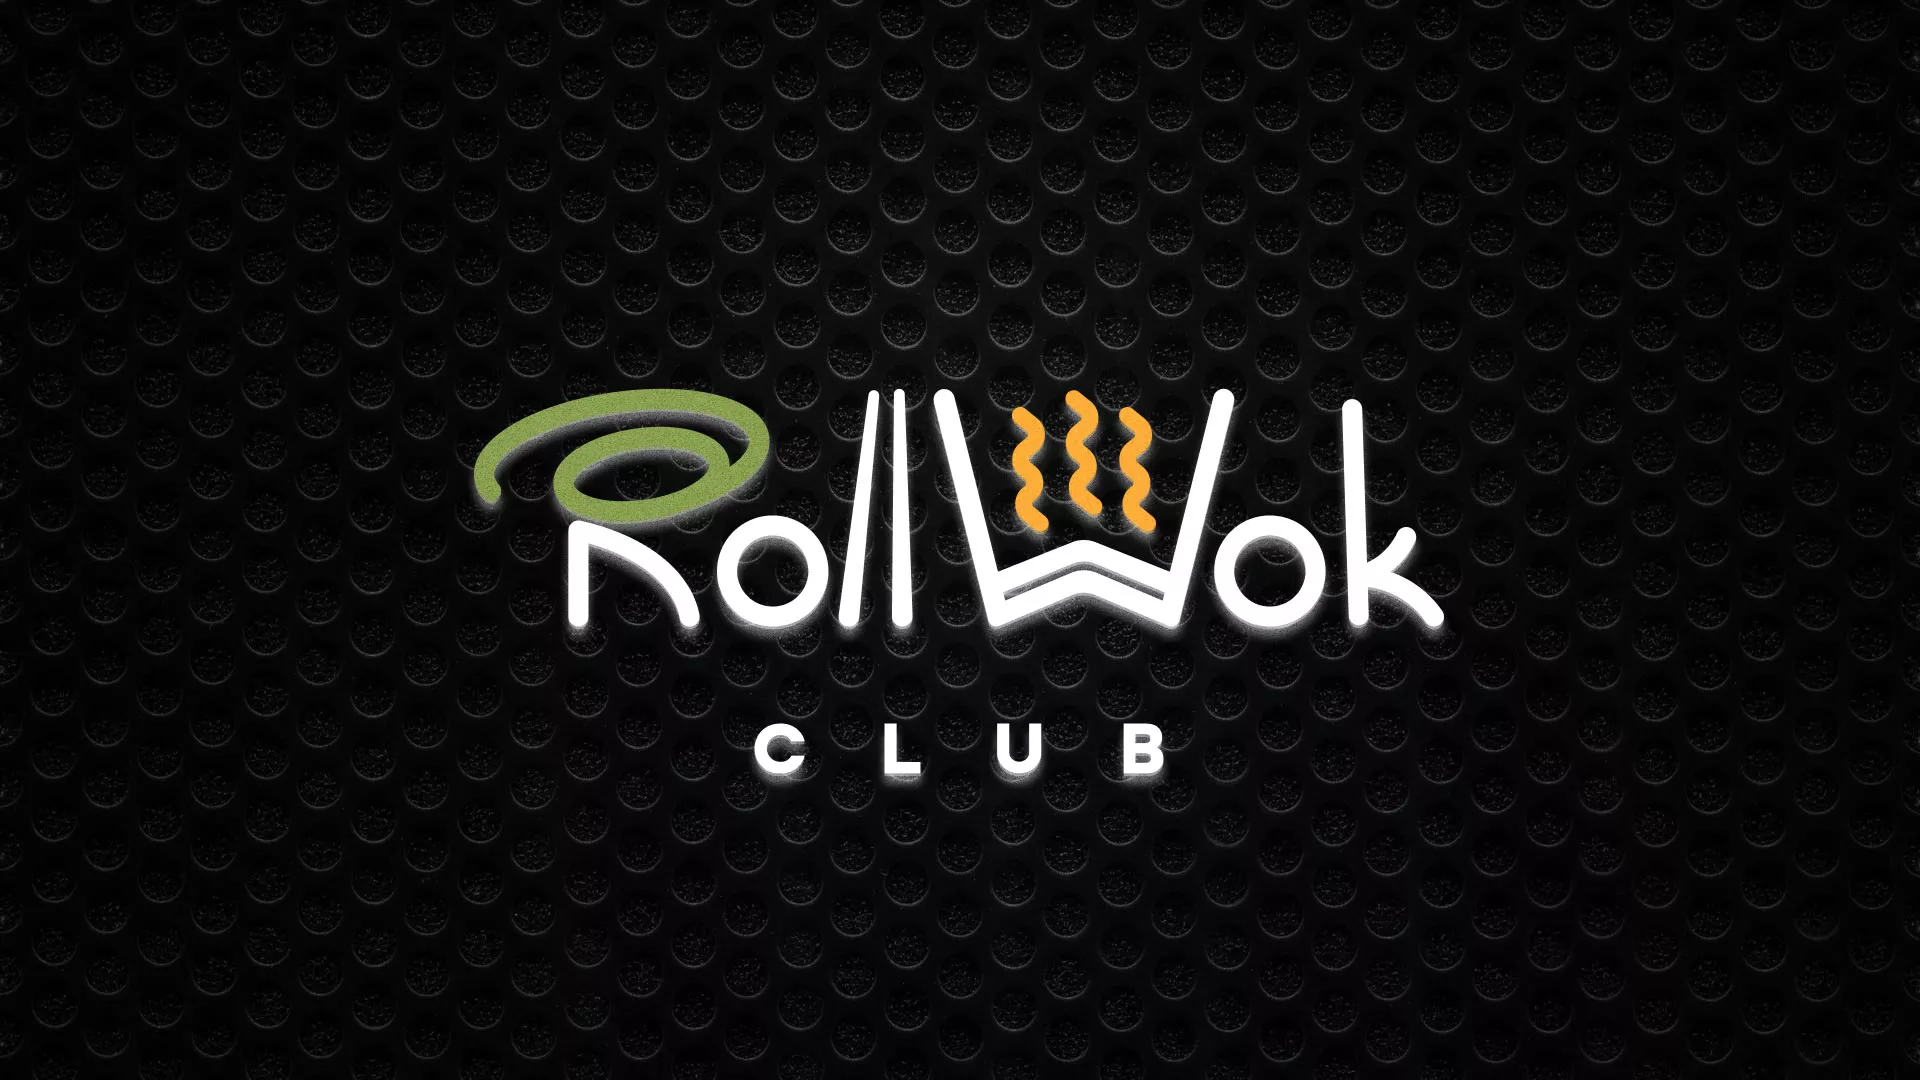 Брендирование торговых точек суши-бара «Roll Wok Club» в Верхнем Уфалее